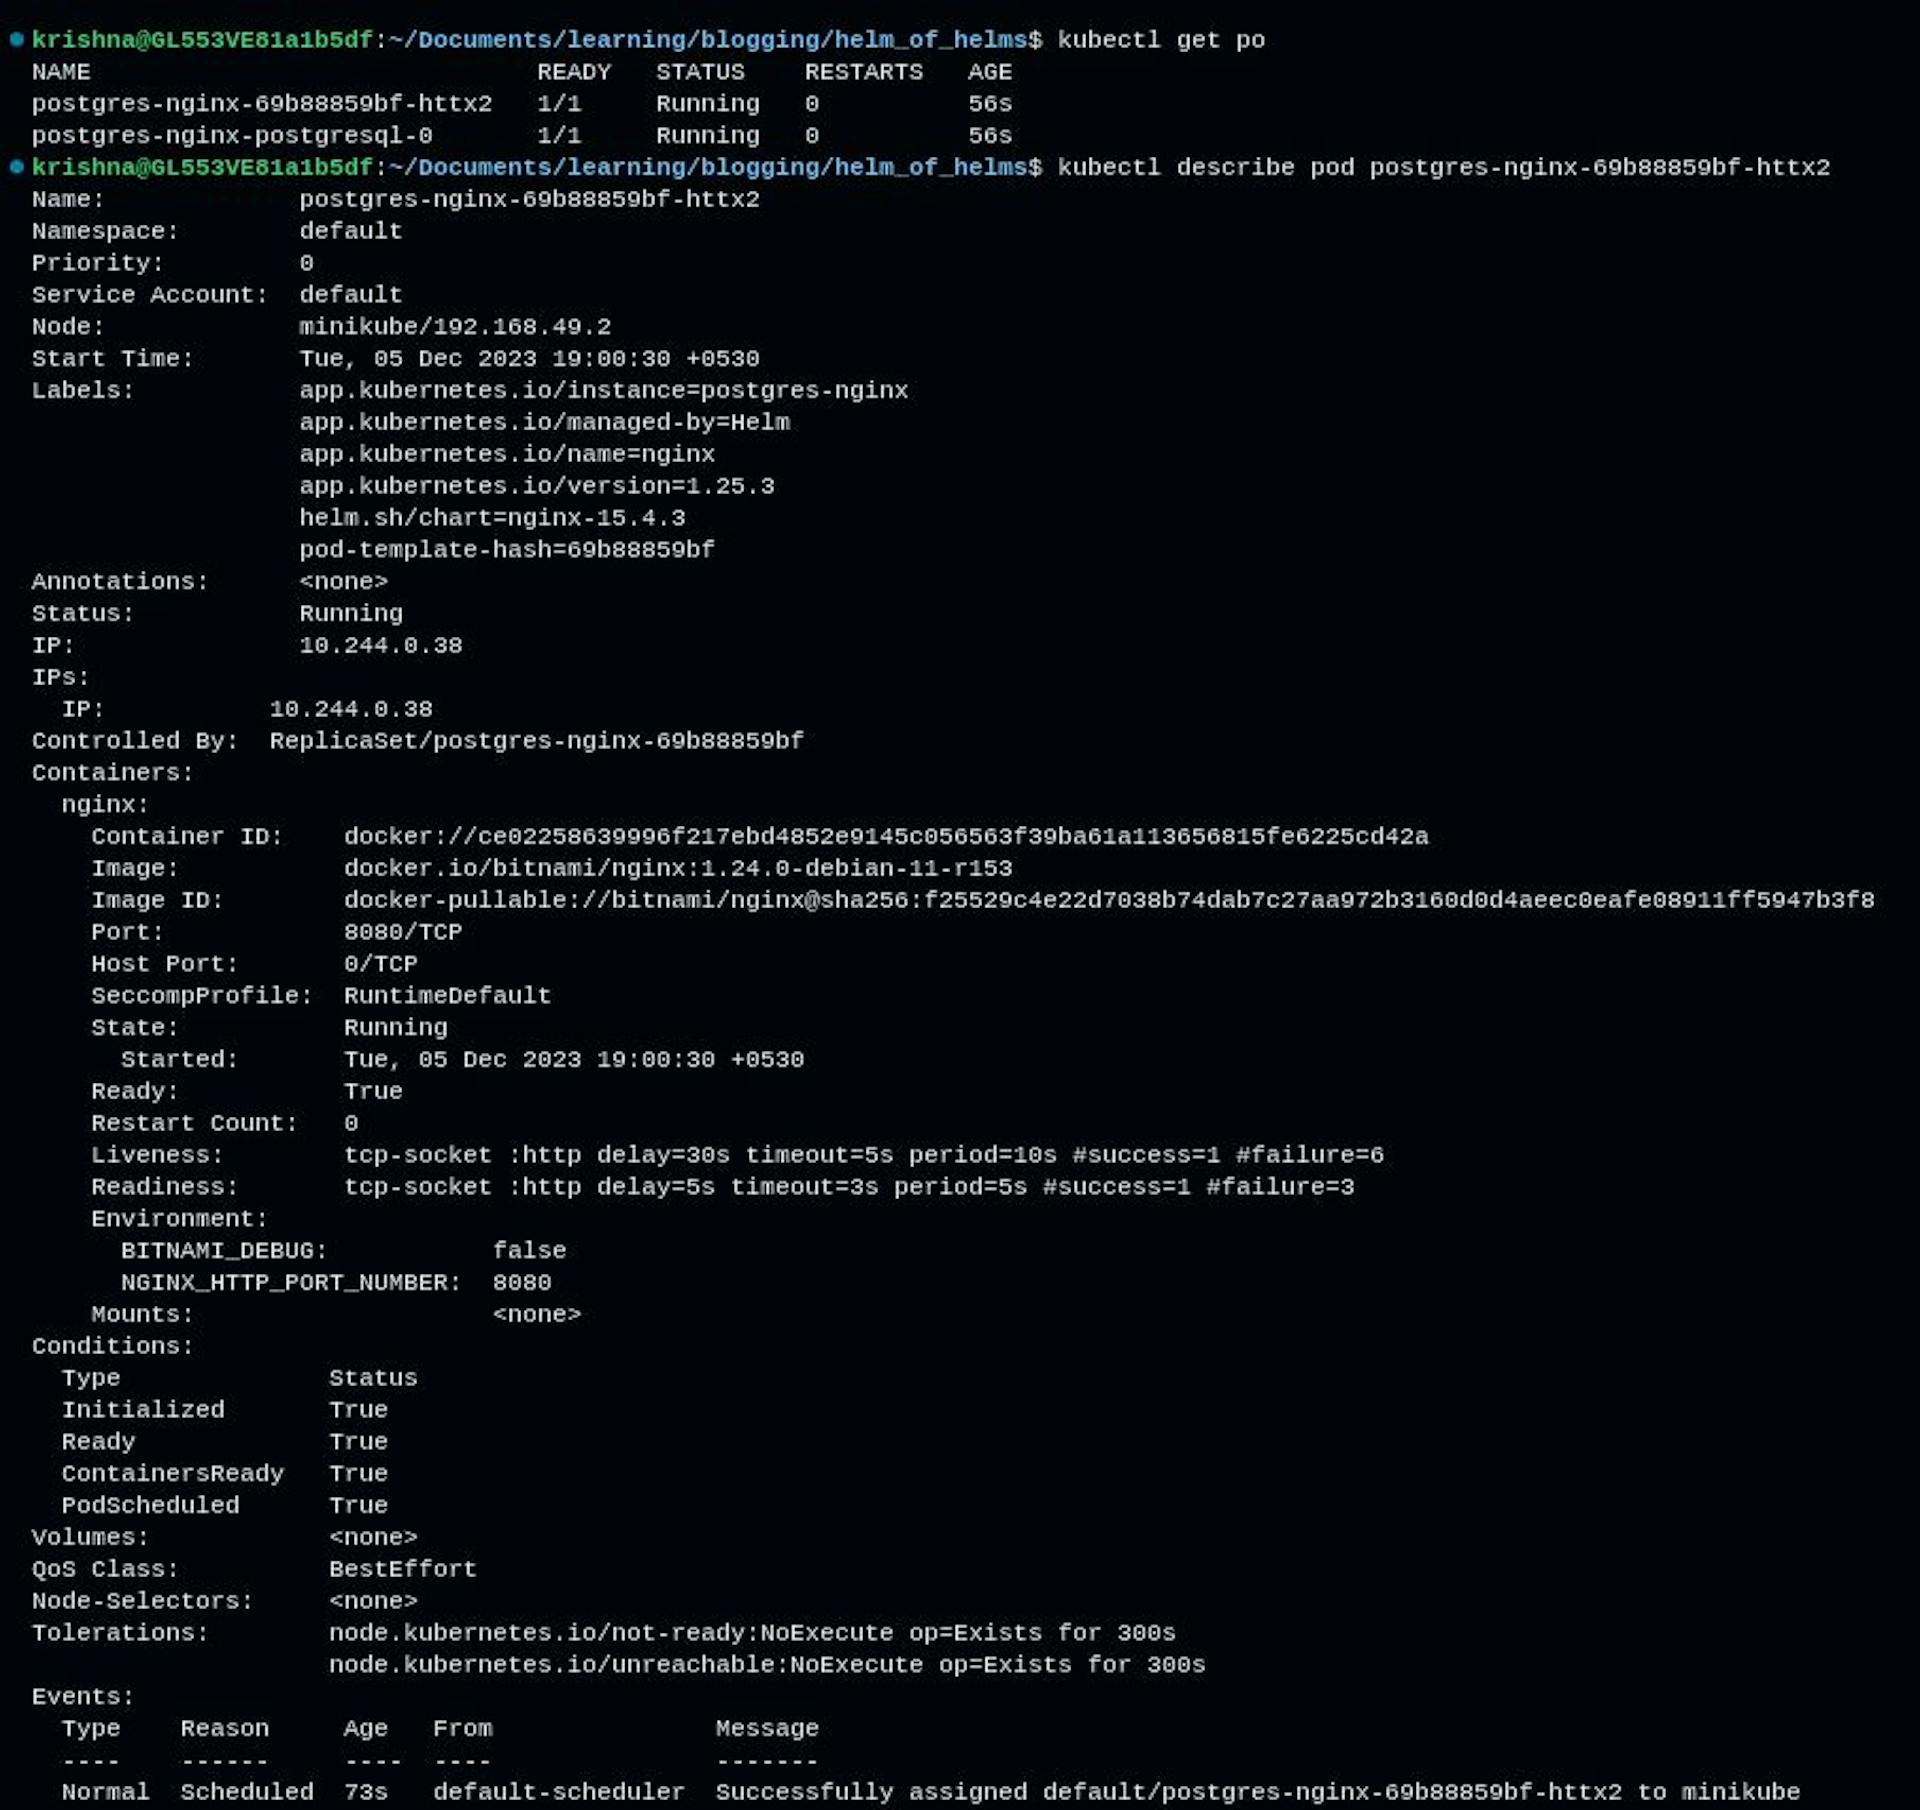 Nginx pod running on 1.24.0-devbian-11-r153